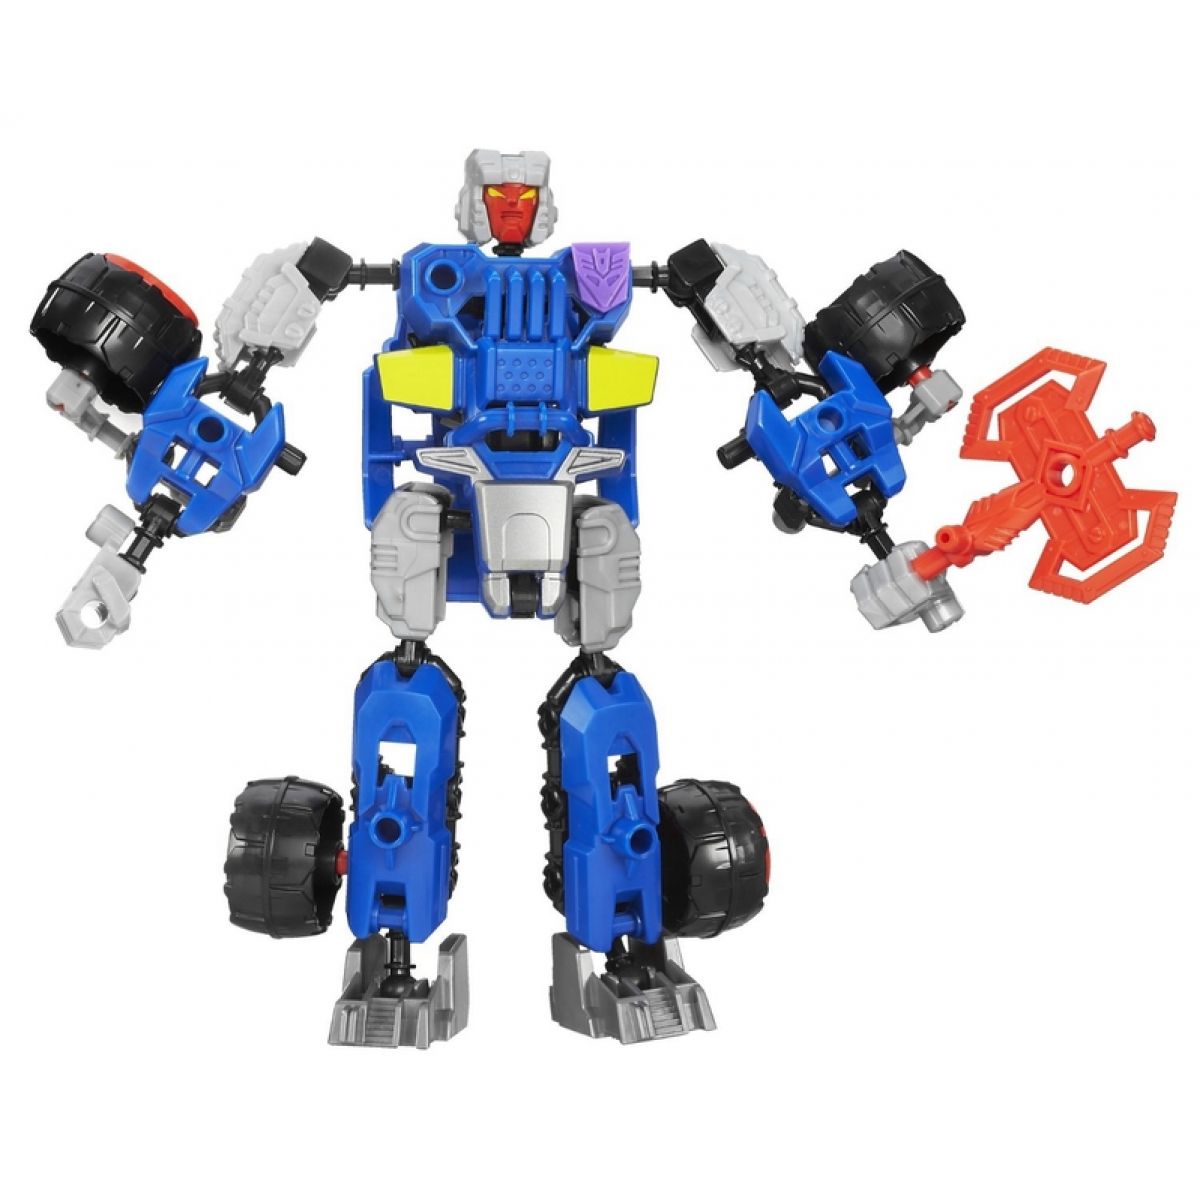 Transformers Construct bots základní - Decepticon Breakdown